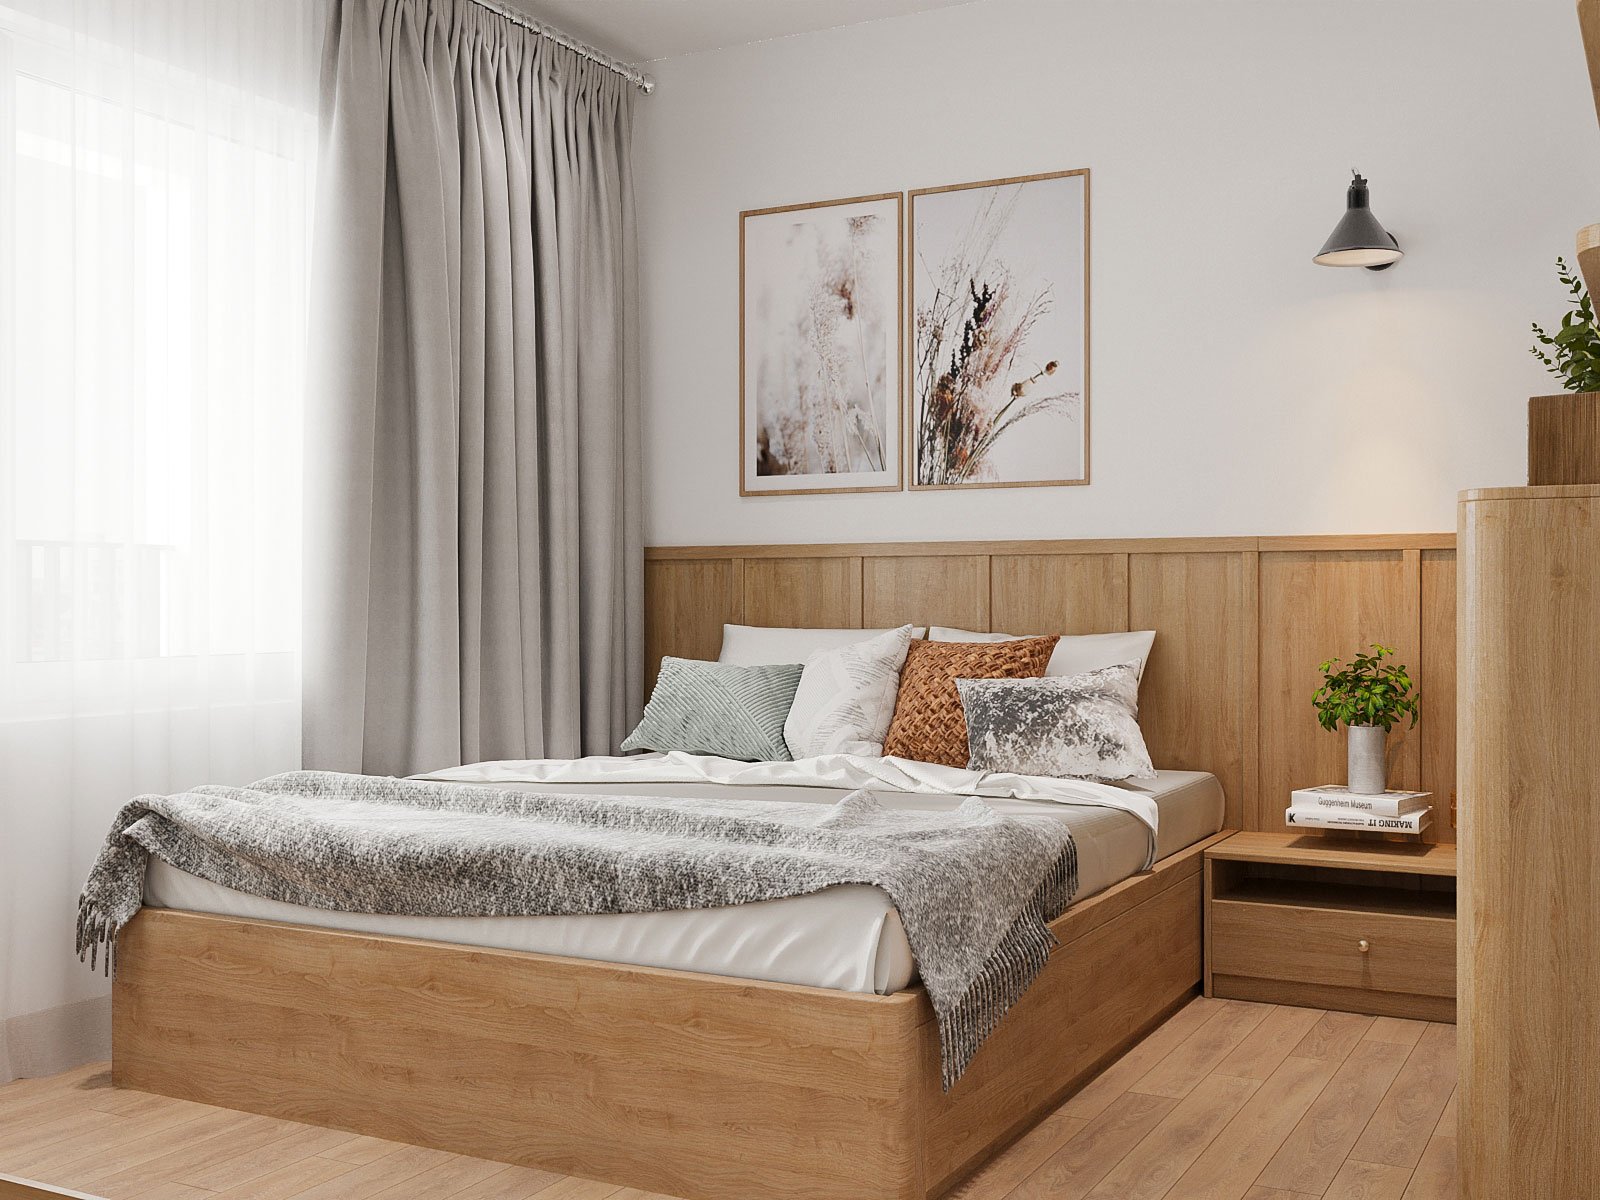 Nội thất gỗ trong phòng ngủ được đóng theo bộ, đảm bảo vừa vặn với kích thước phòng, giúp tối ưu hóa diện tích sử dụng trong các căn hộ nhỏ, trung bình.